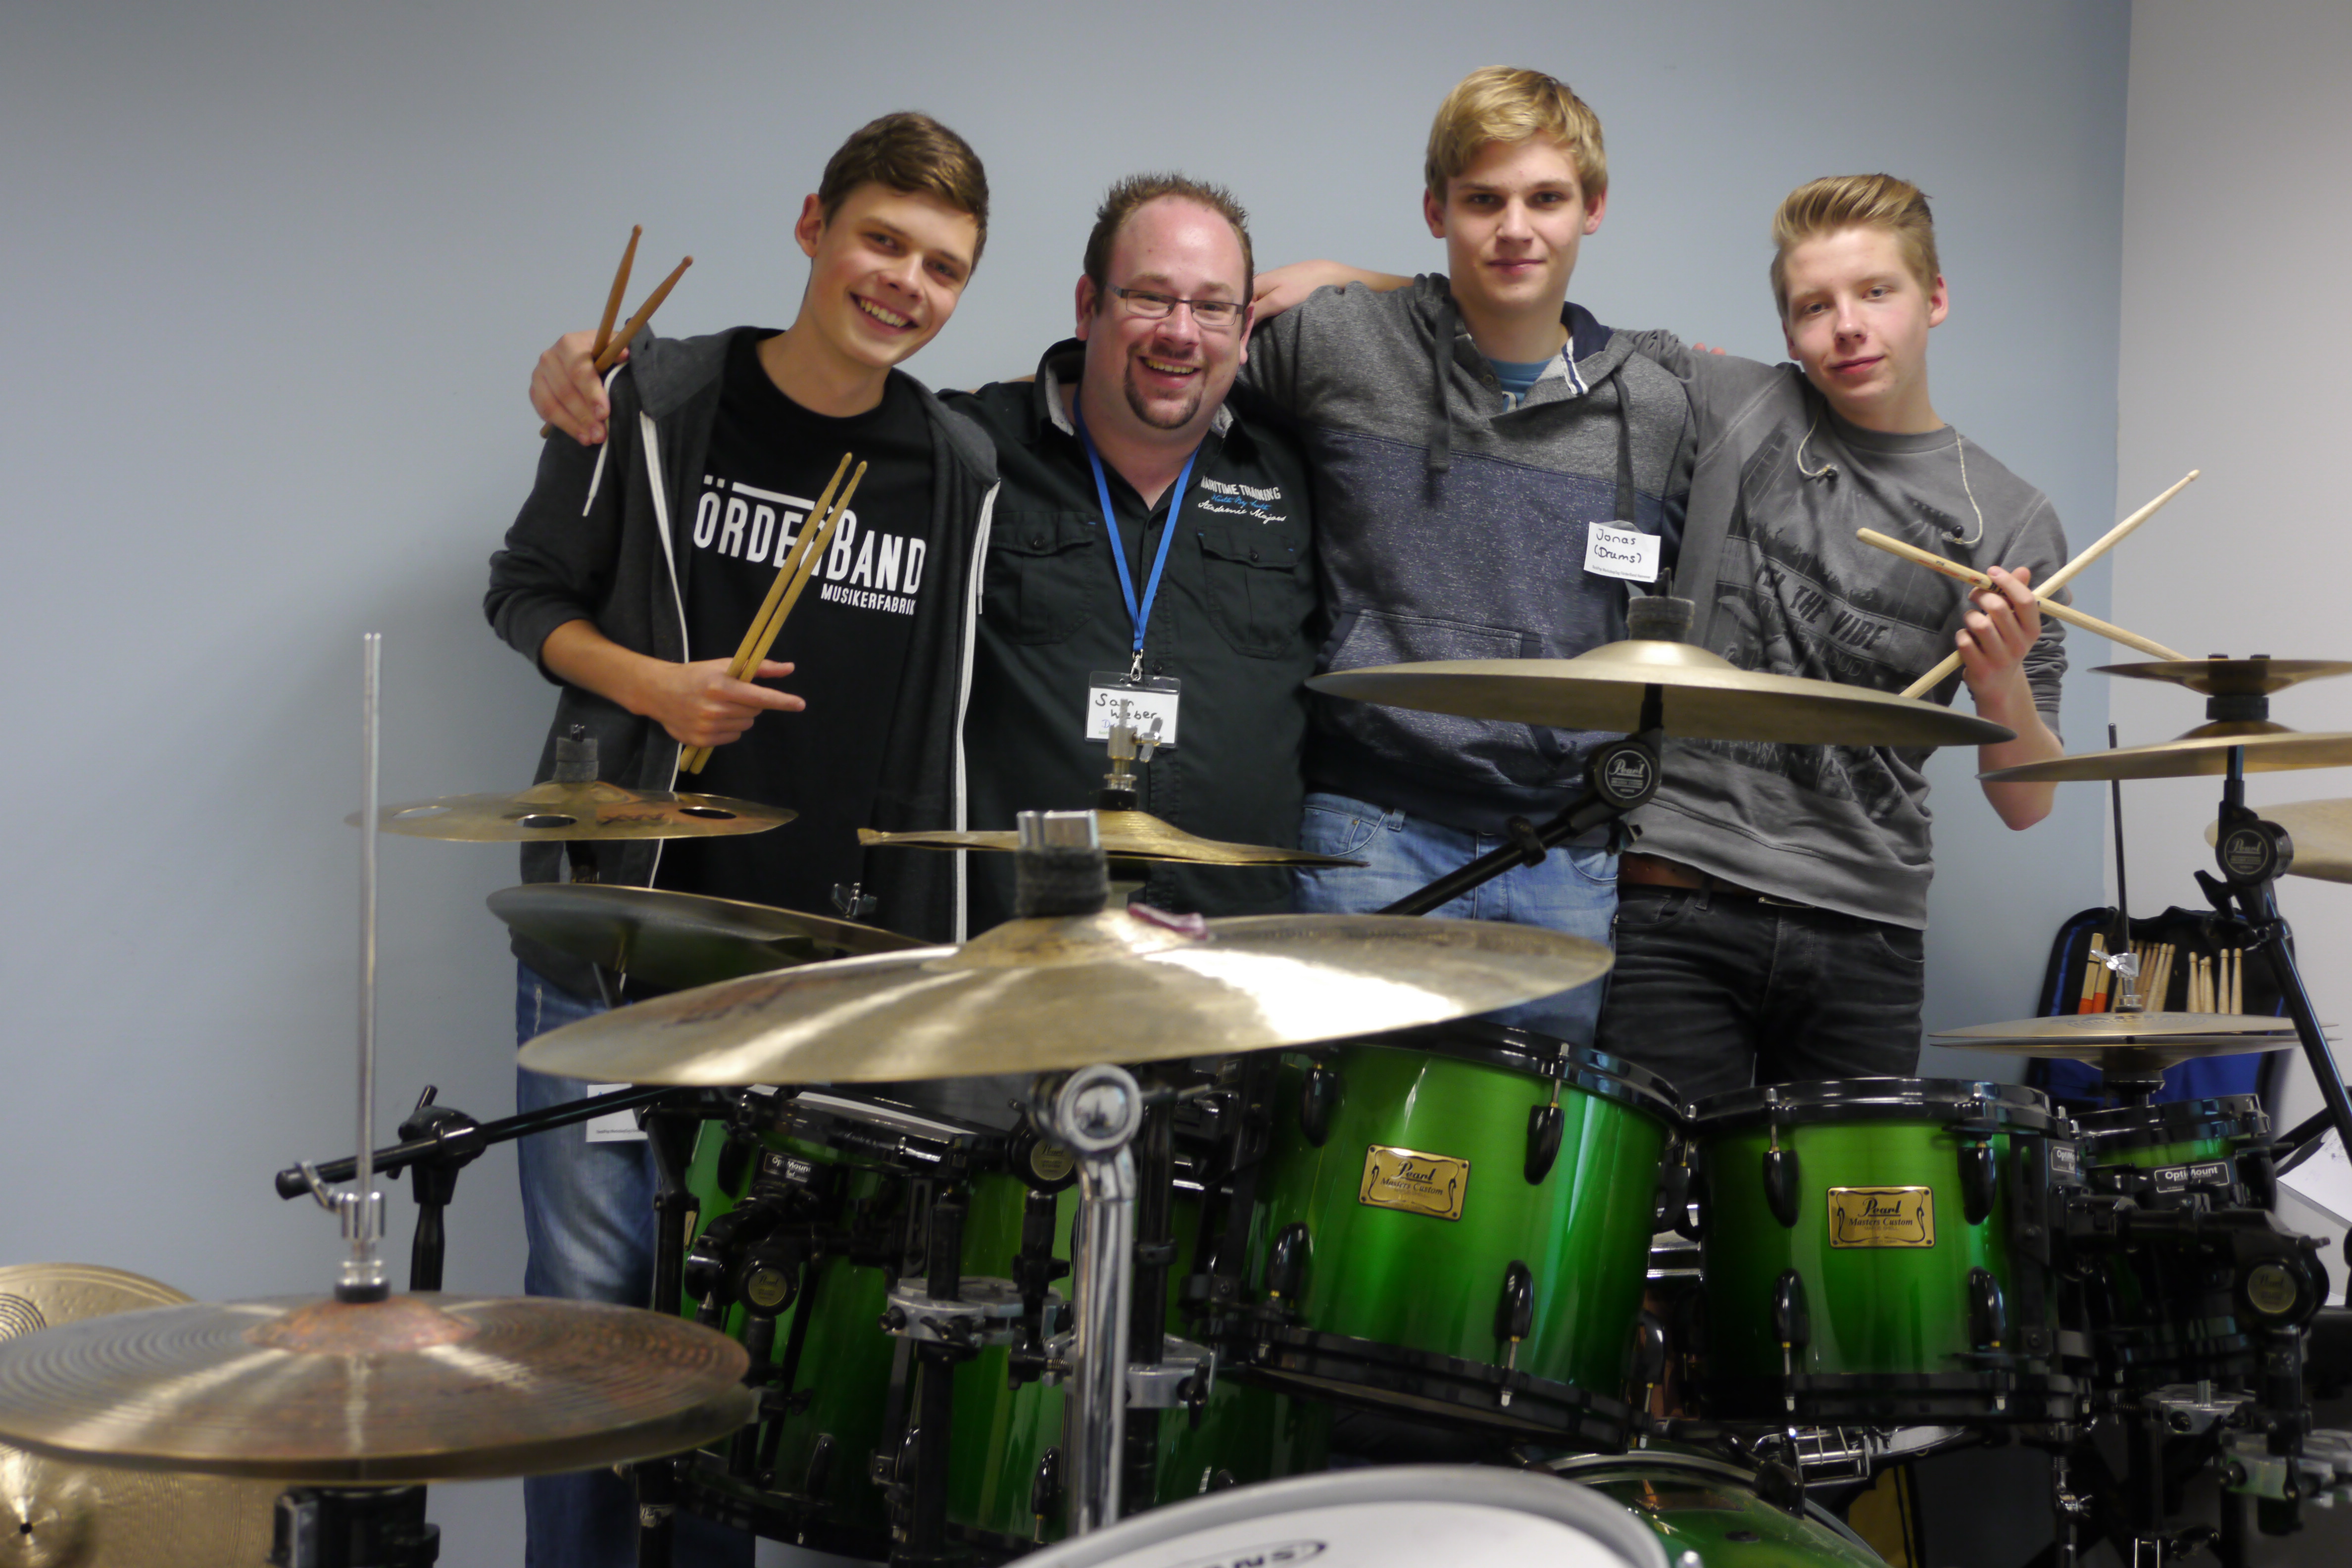 Samuel Weber unterrichtet beim FörderBand der Musikerfabrik Hannover Drums und fördert in Workshops Bands und Einzelkünstler